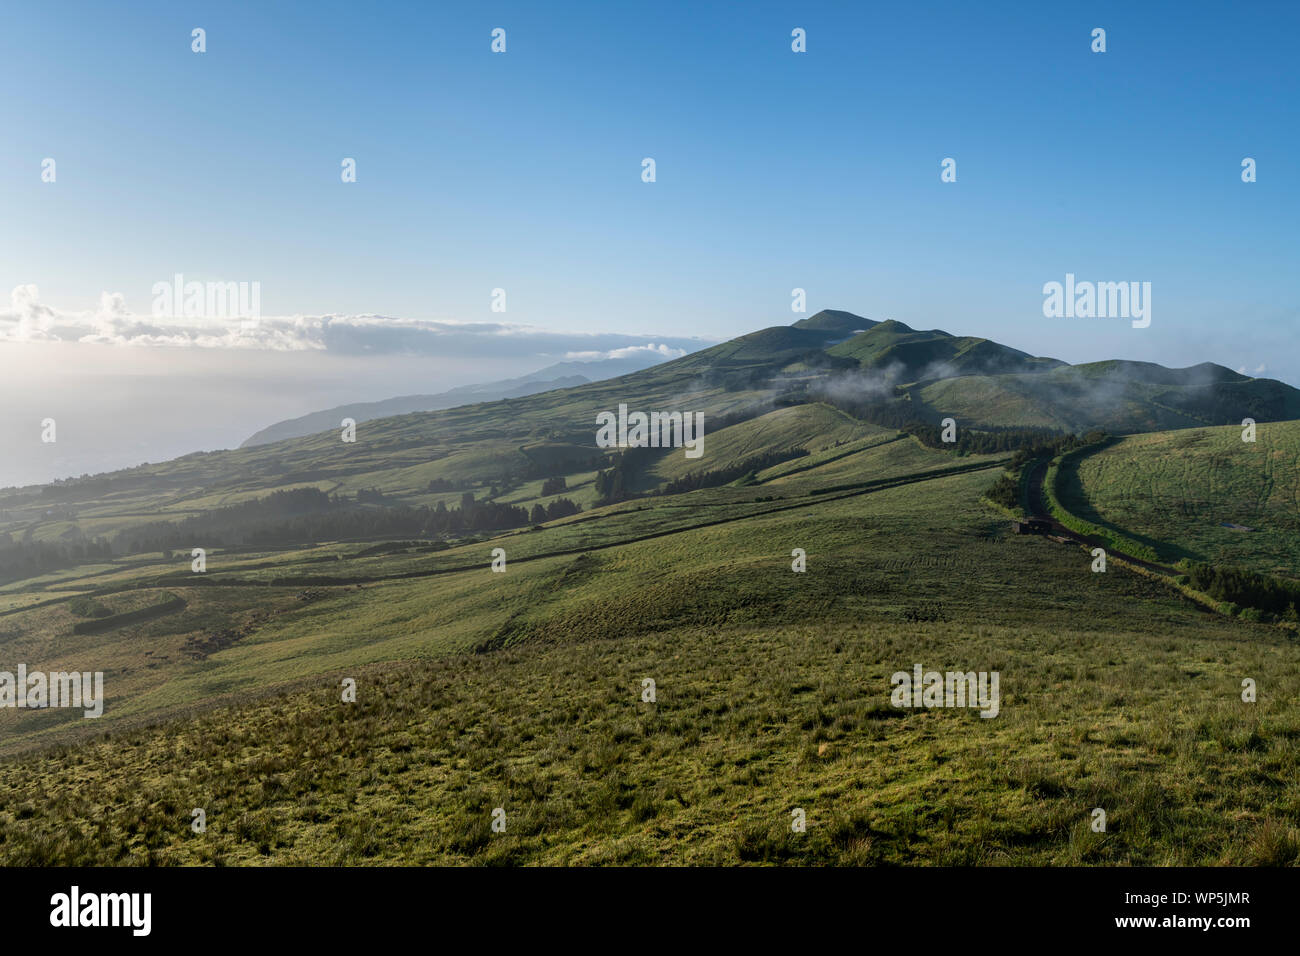 Temprano en la mañana la vista horizontal con el amanecer y la niebla sobre los verdes campos en la costa norte de la isla de Azores Sao Jorge, visto desde la central m Foto de stock